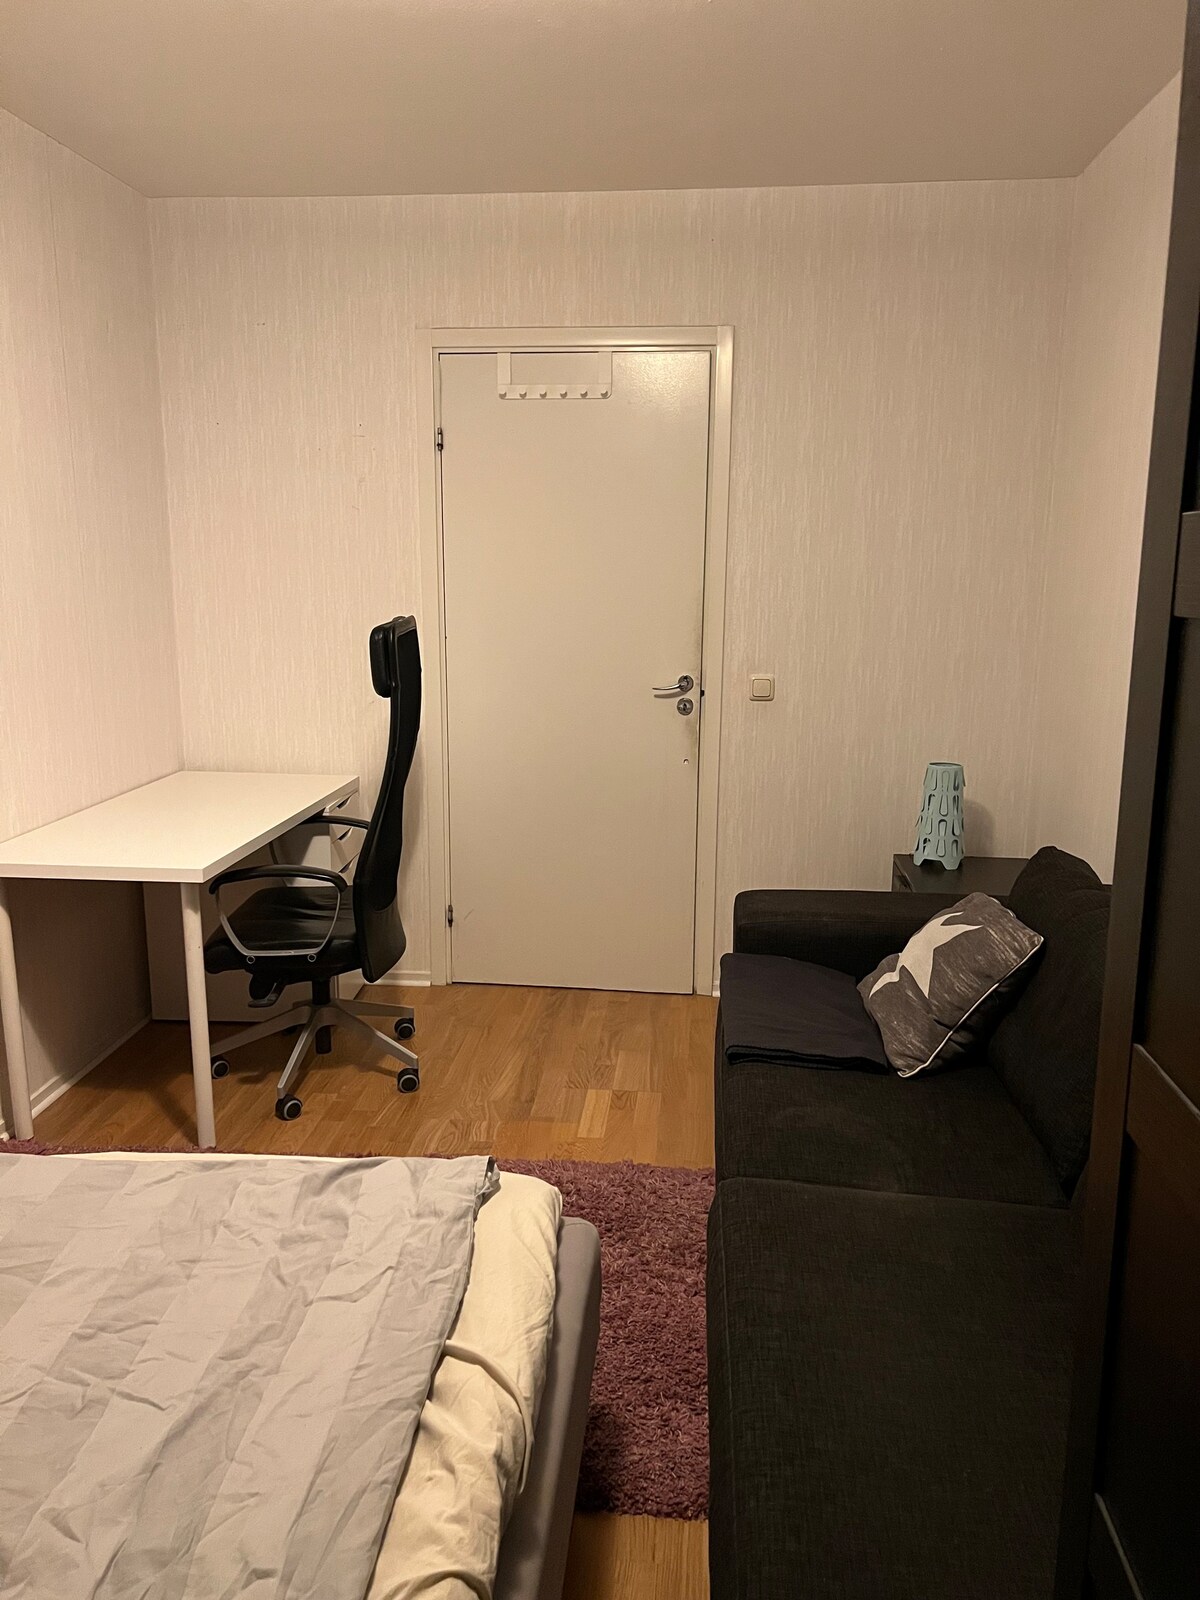 家具齐全的房间， 20分钟即可抵达斯德哥尔摩市中心